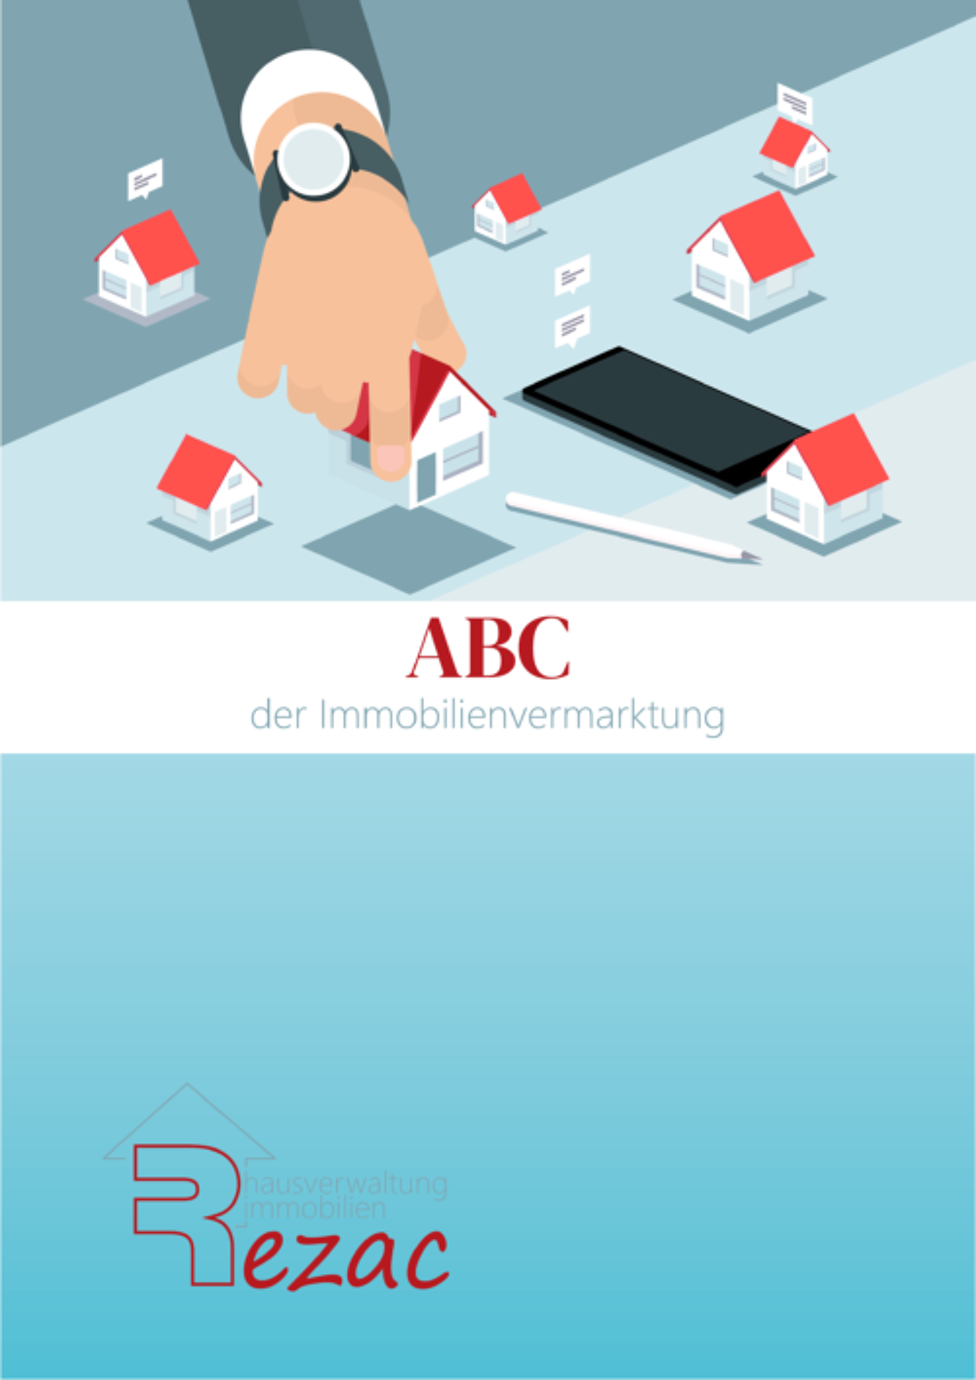 Coverbild des E-Books 'ABC der Immobilienvermarktung' von Rezac